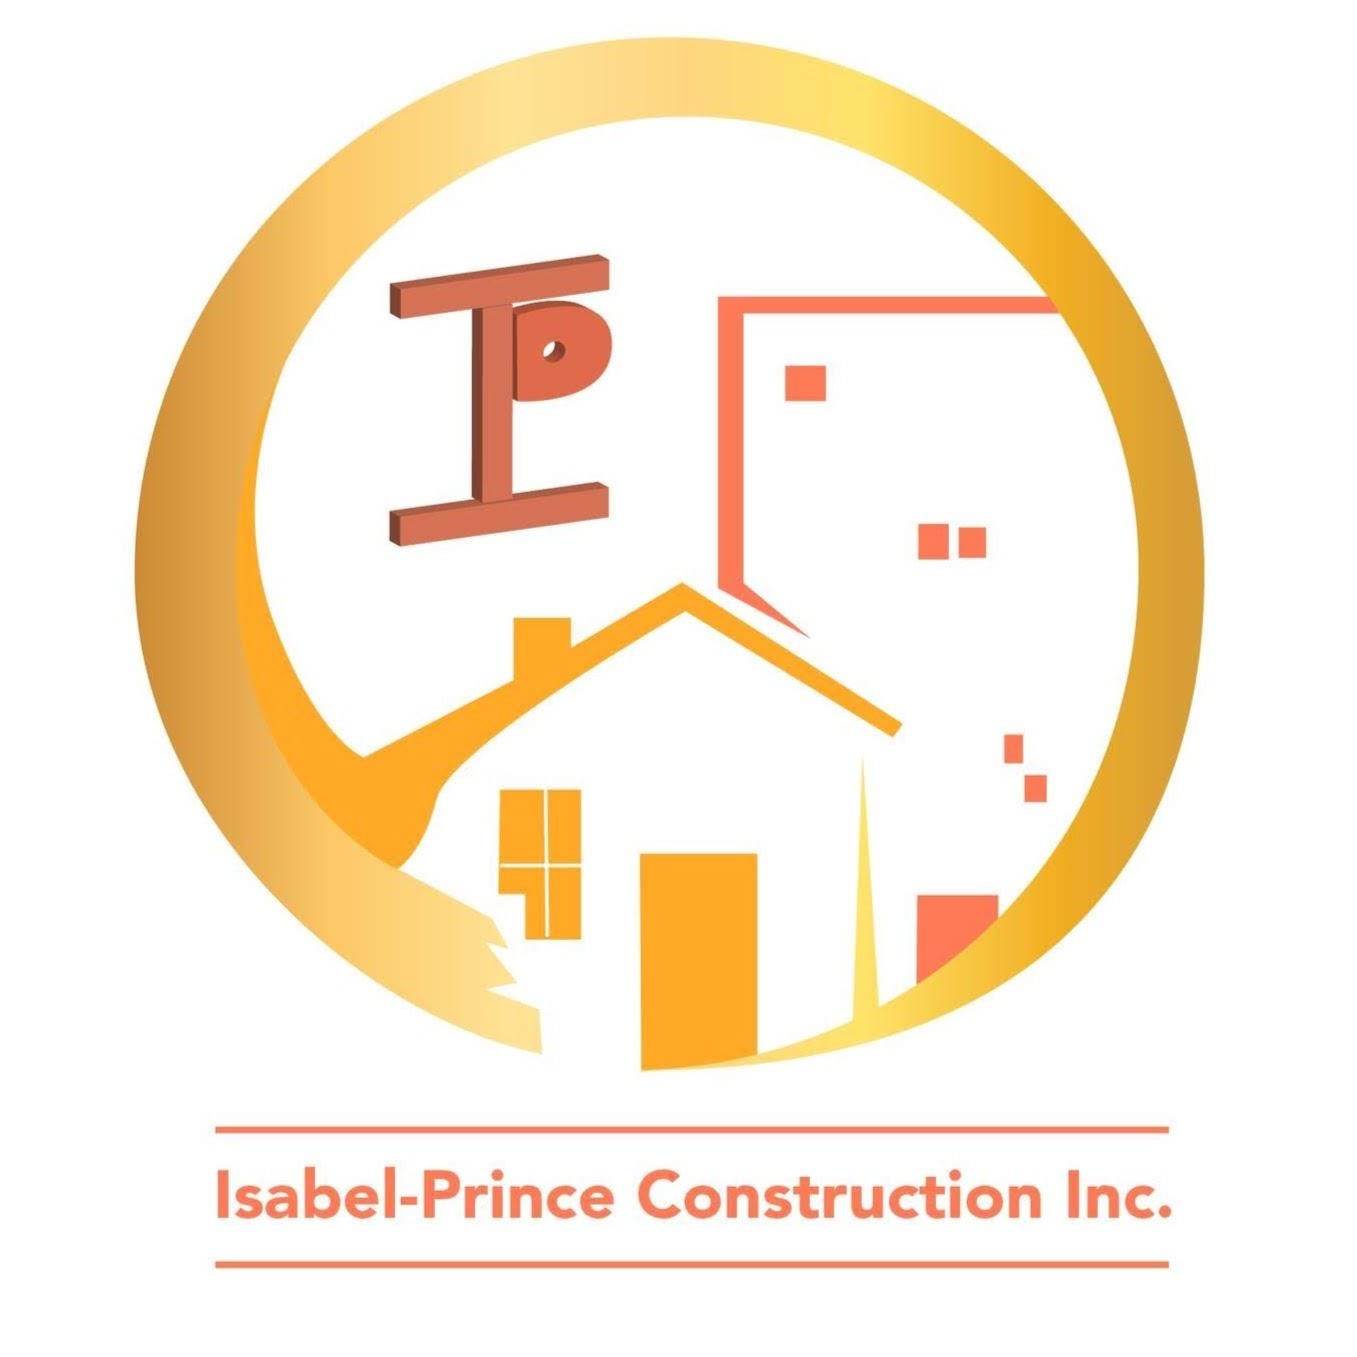 Isabel-Prince Construction Inc. - Rénovation Salle de bain - Saint-Eustache - Bathroom Renovations